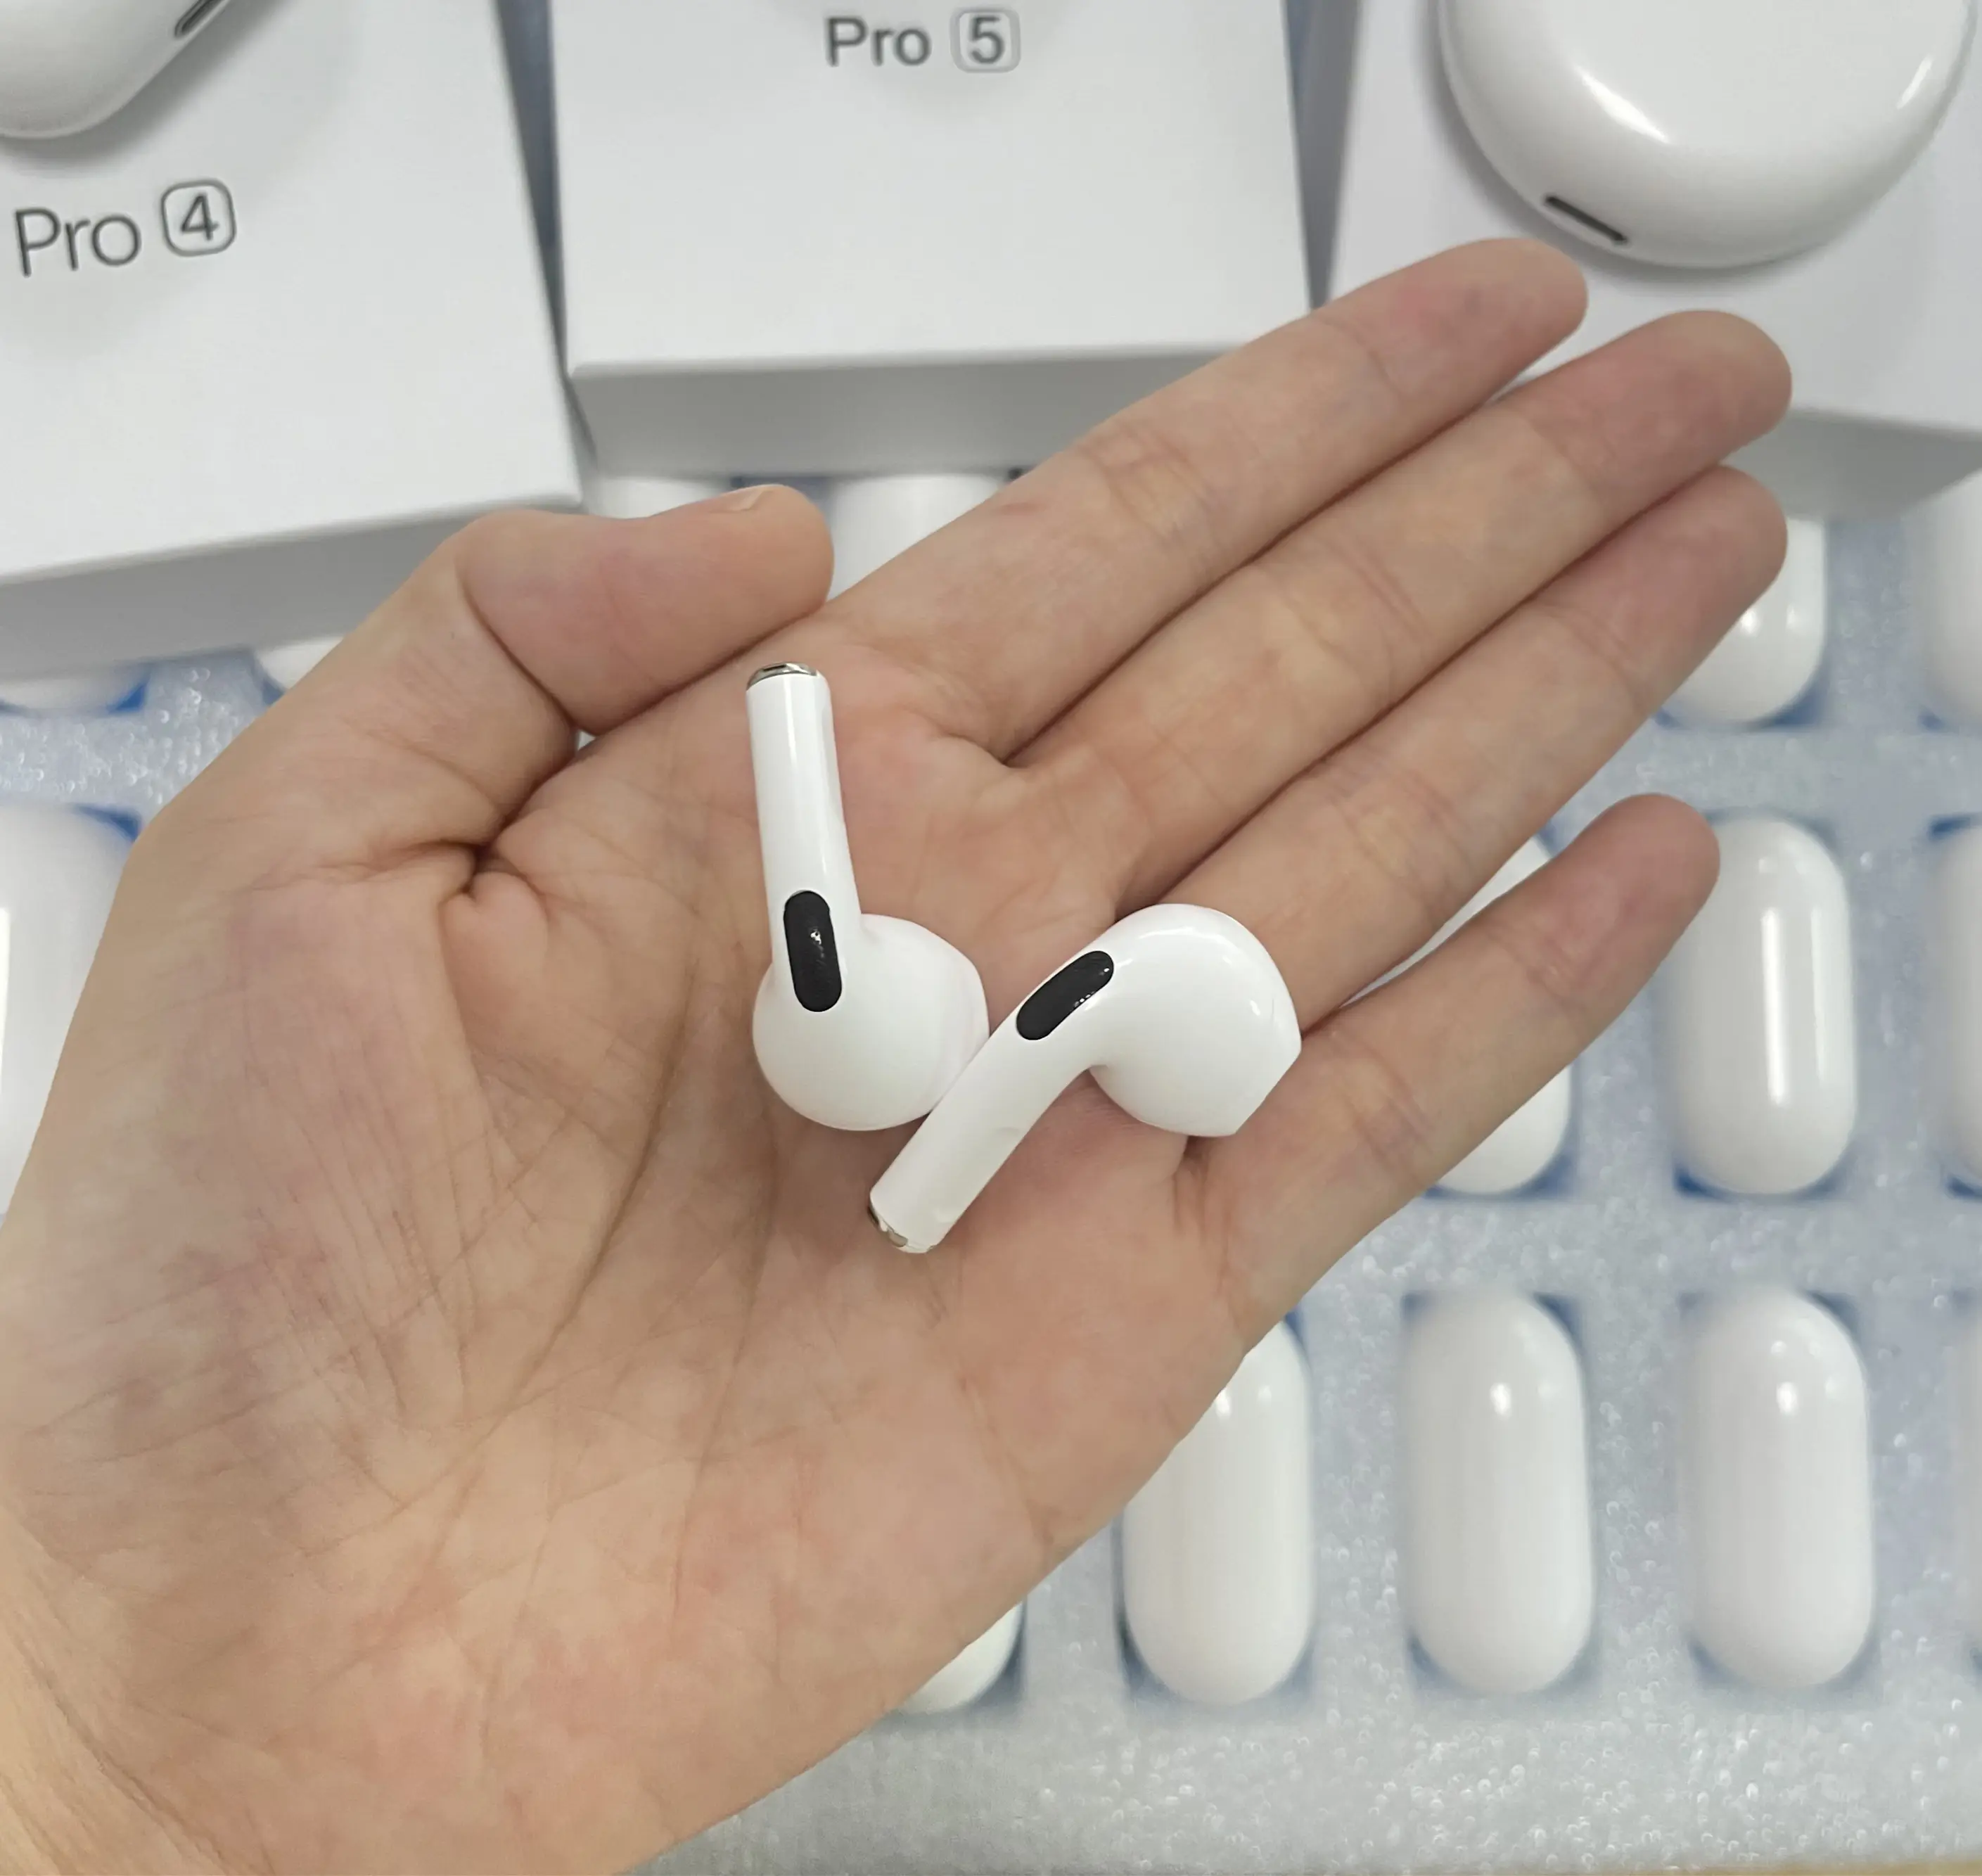 Fones de ouvido bluetooth, fones de ouvido, alta qualidade, tws pro 5, carregamento sem fio, a prova d' água, controle por toque, pro5, para celular